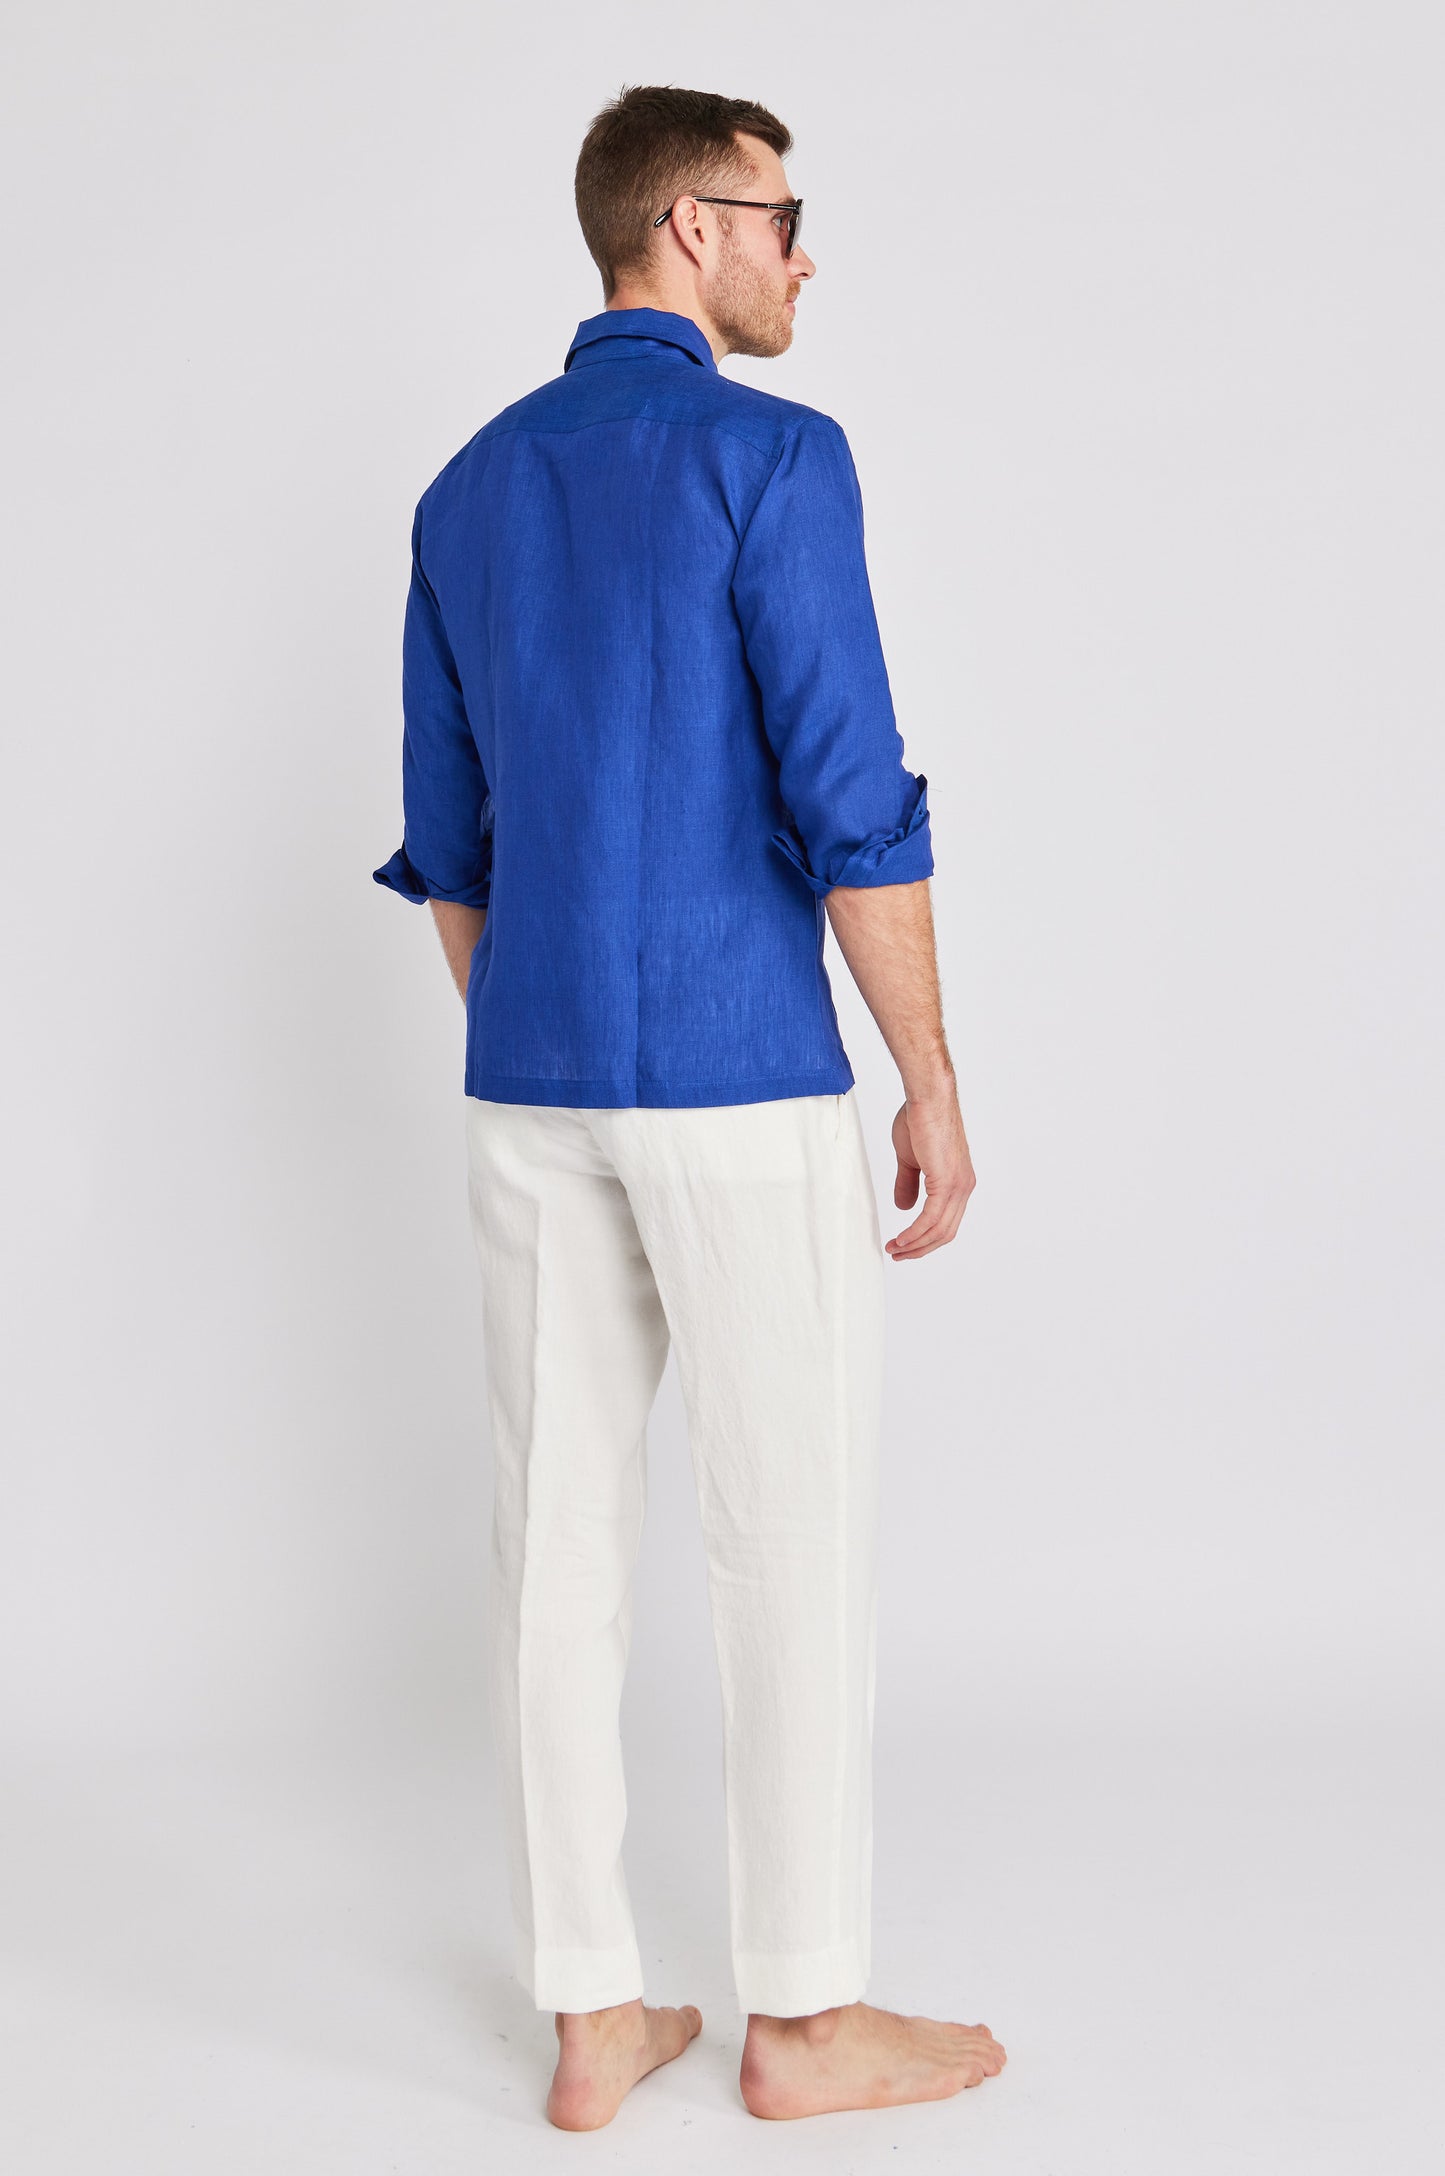 Positano Linen Work Shirt in Cobalt